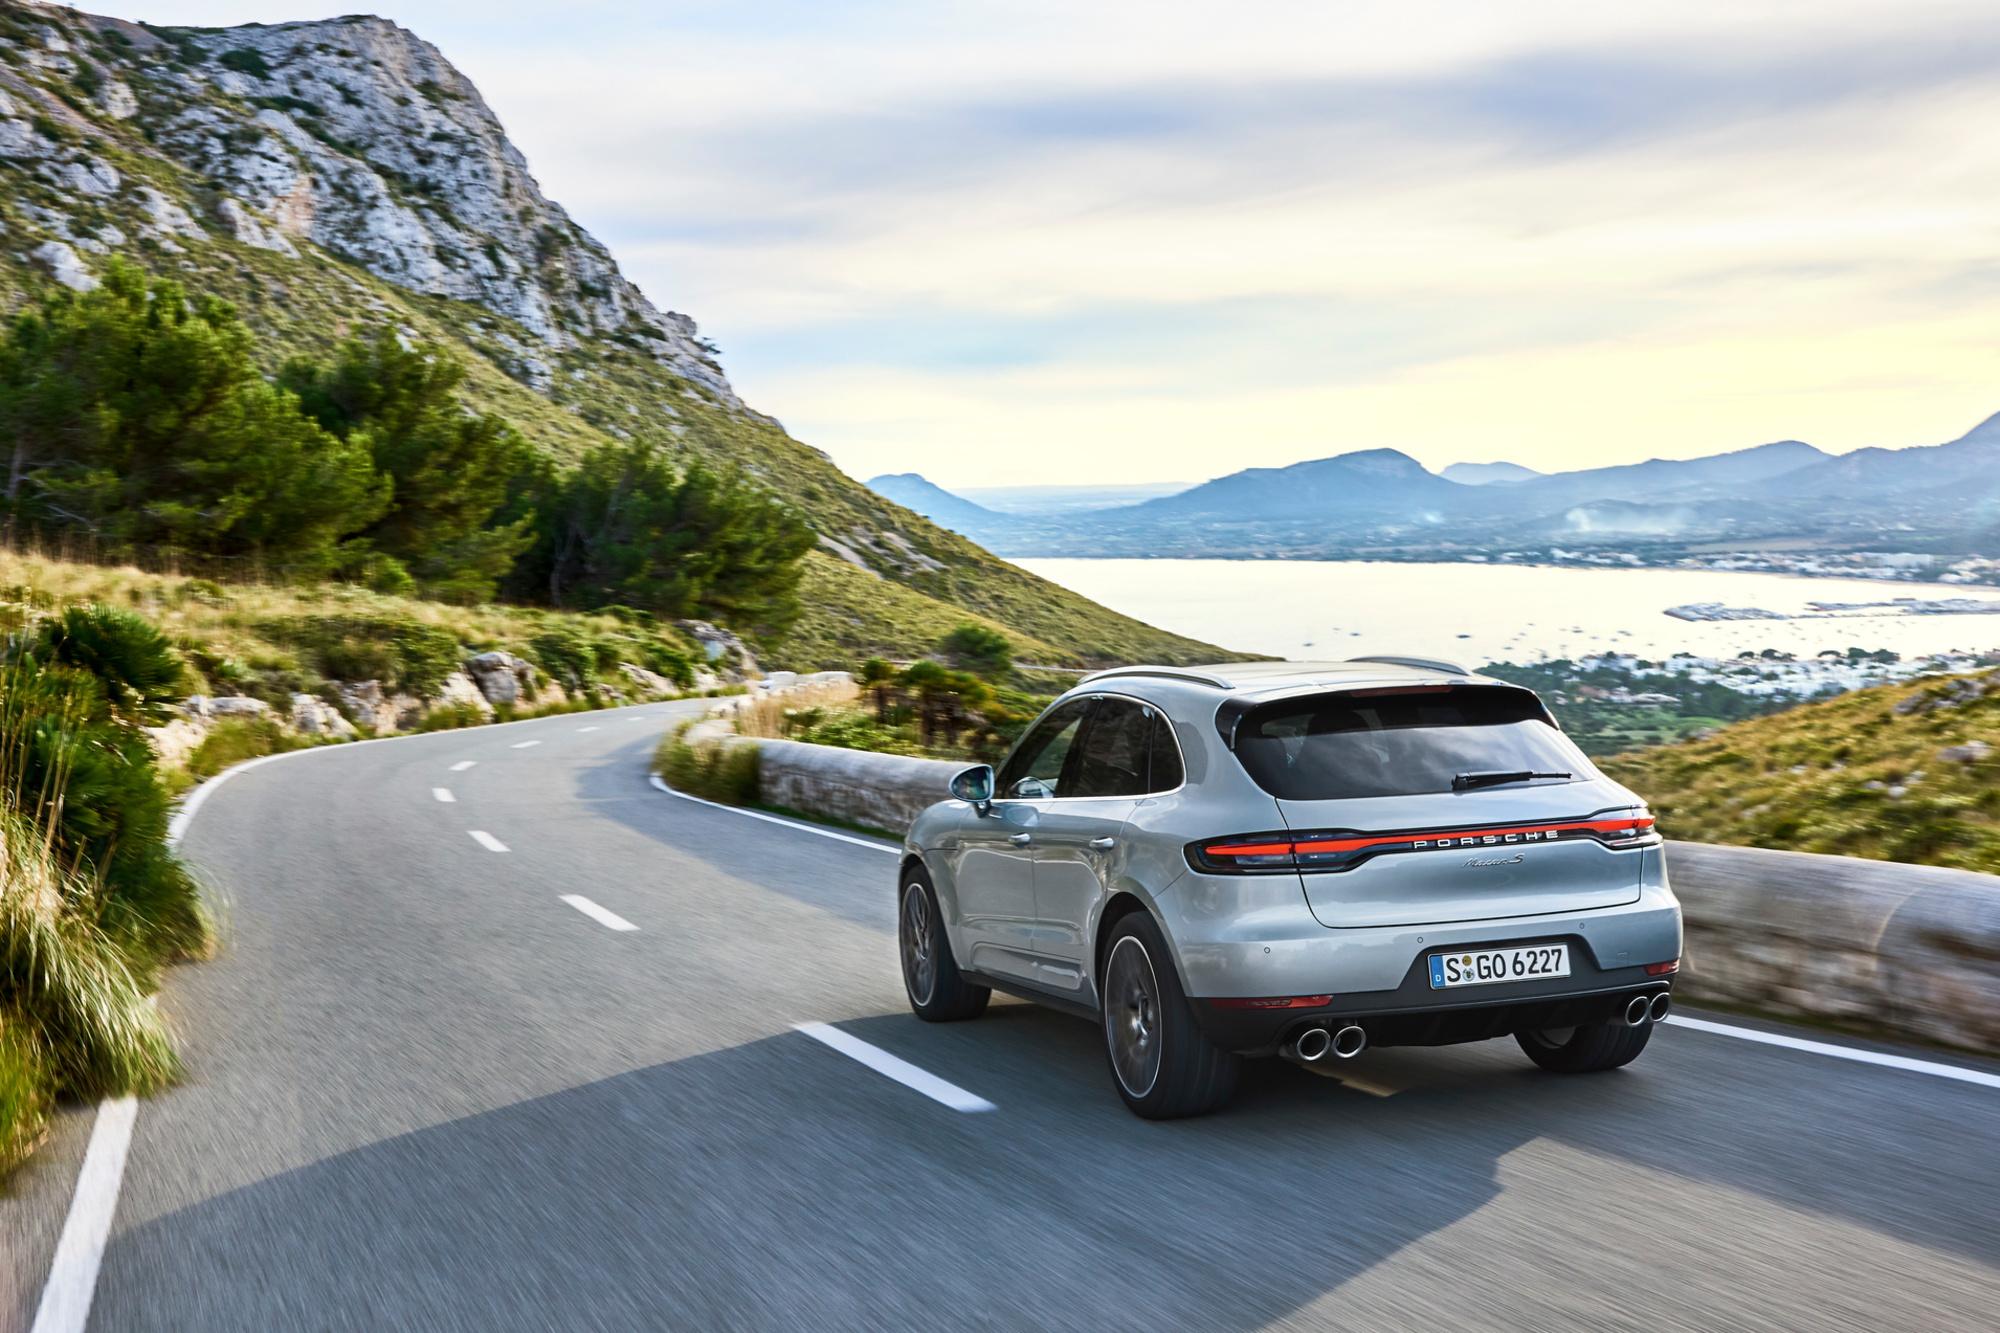 La plus vendue des Porsche reste un SUV, et plus précisément le Macan, modèle compact.